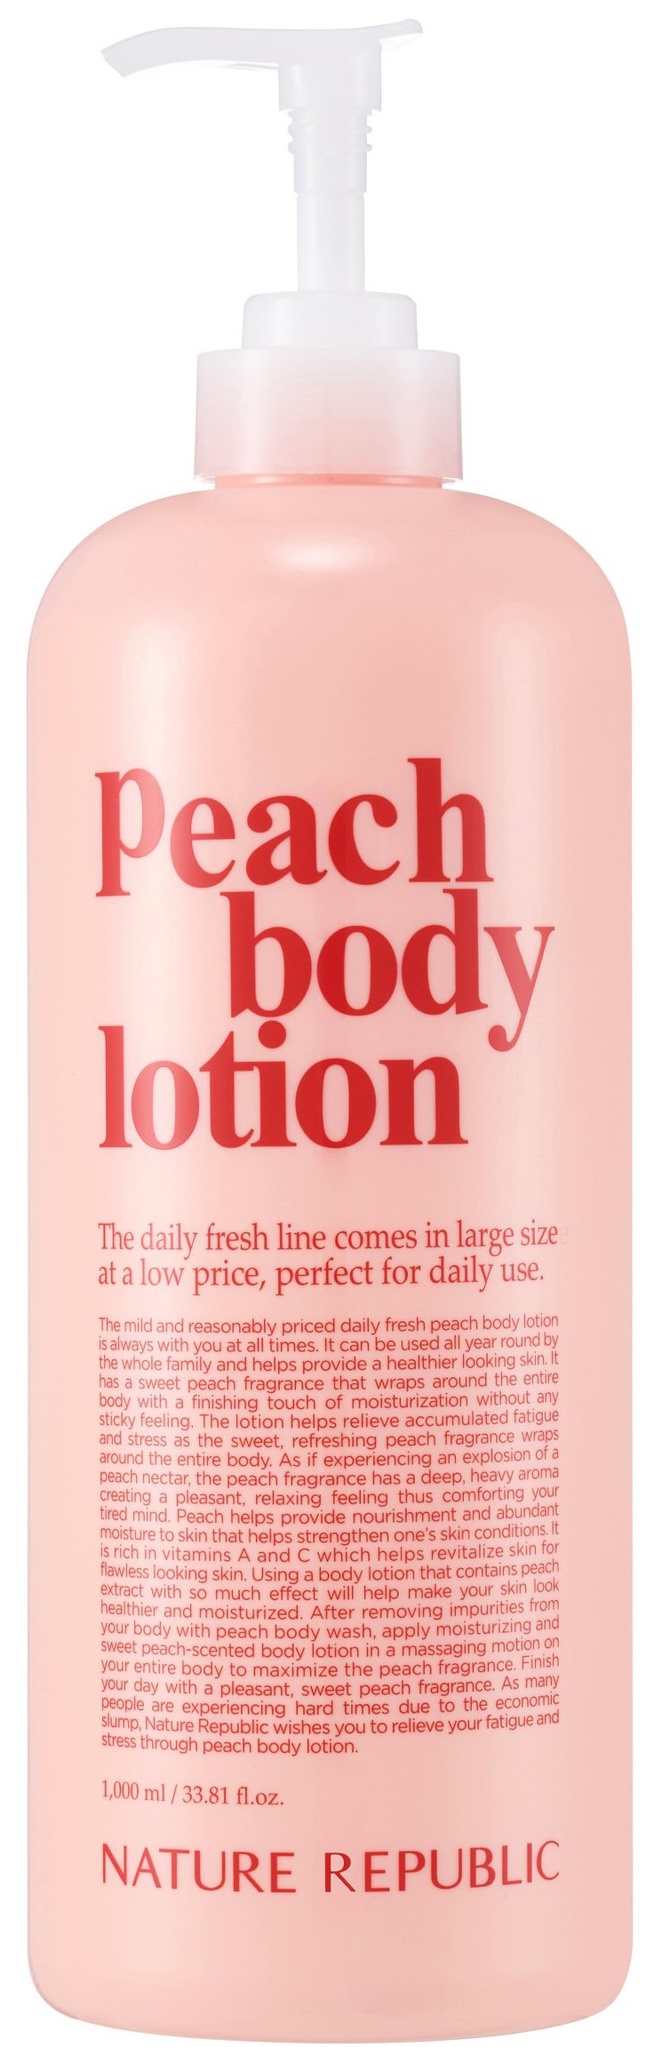 Nature Republic Peach Body Lotion